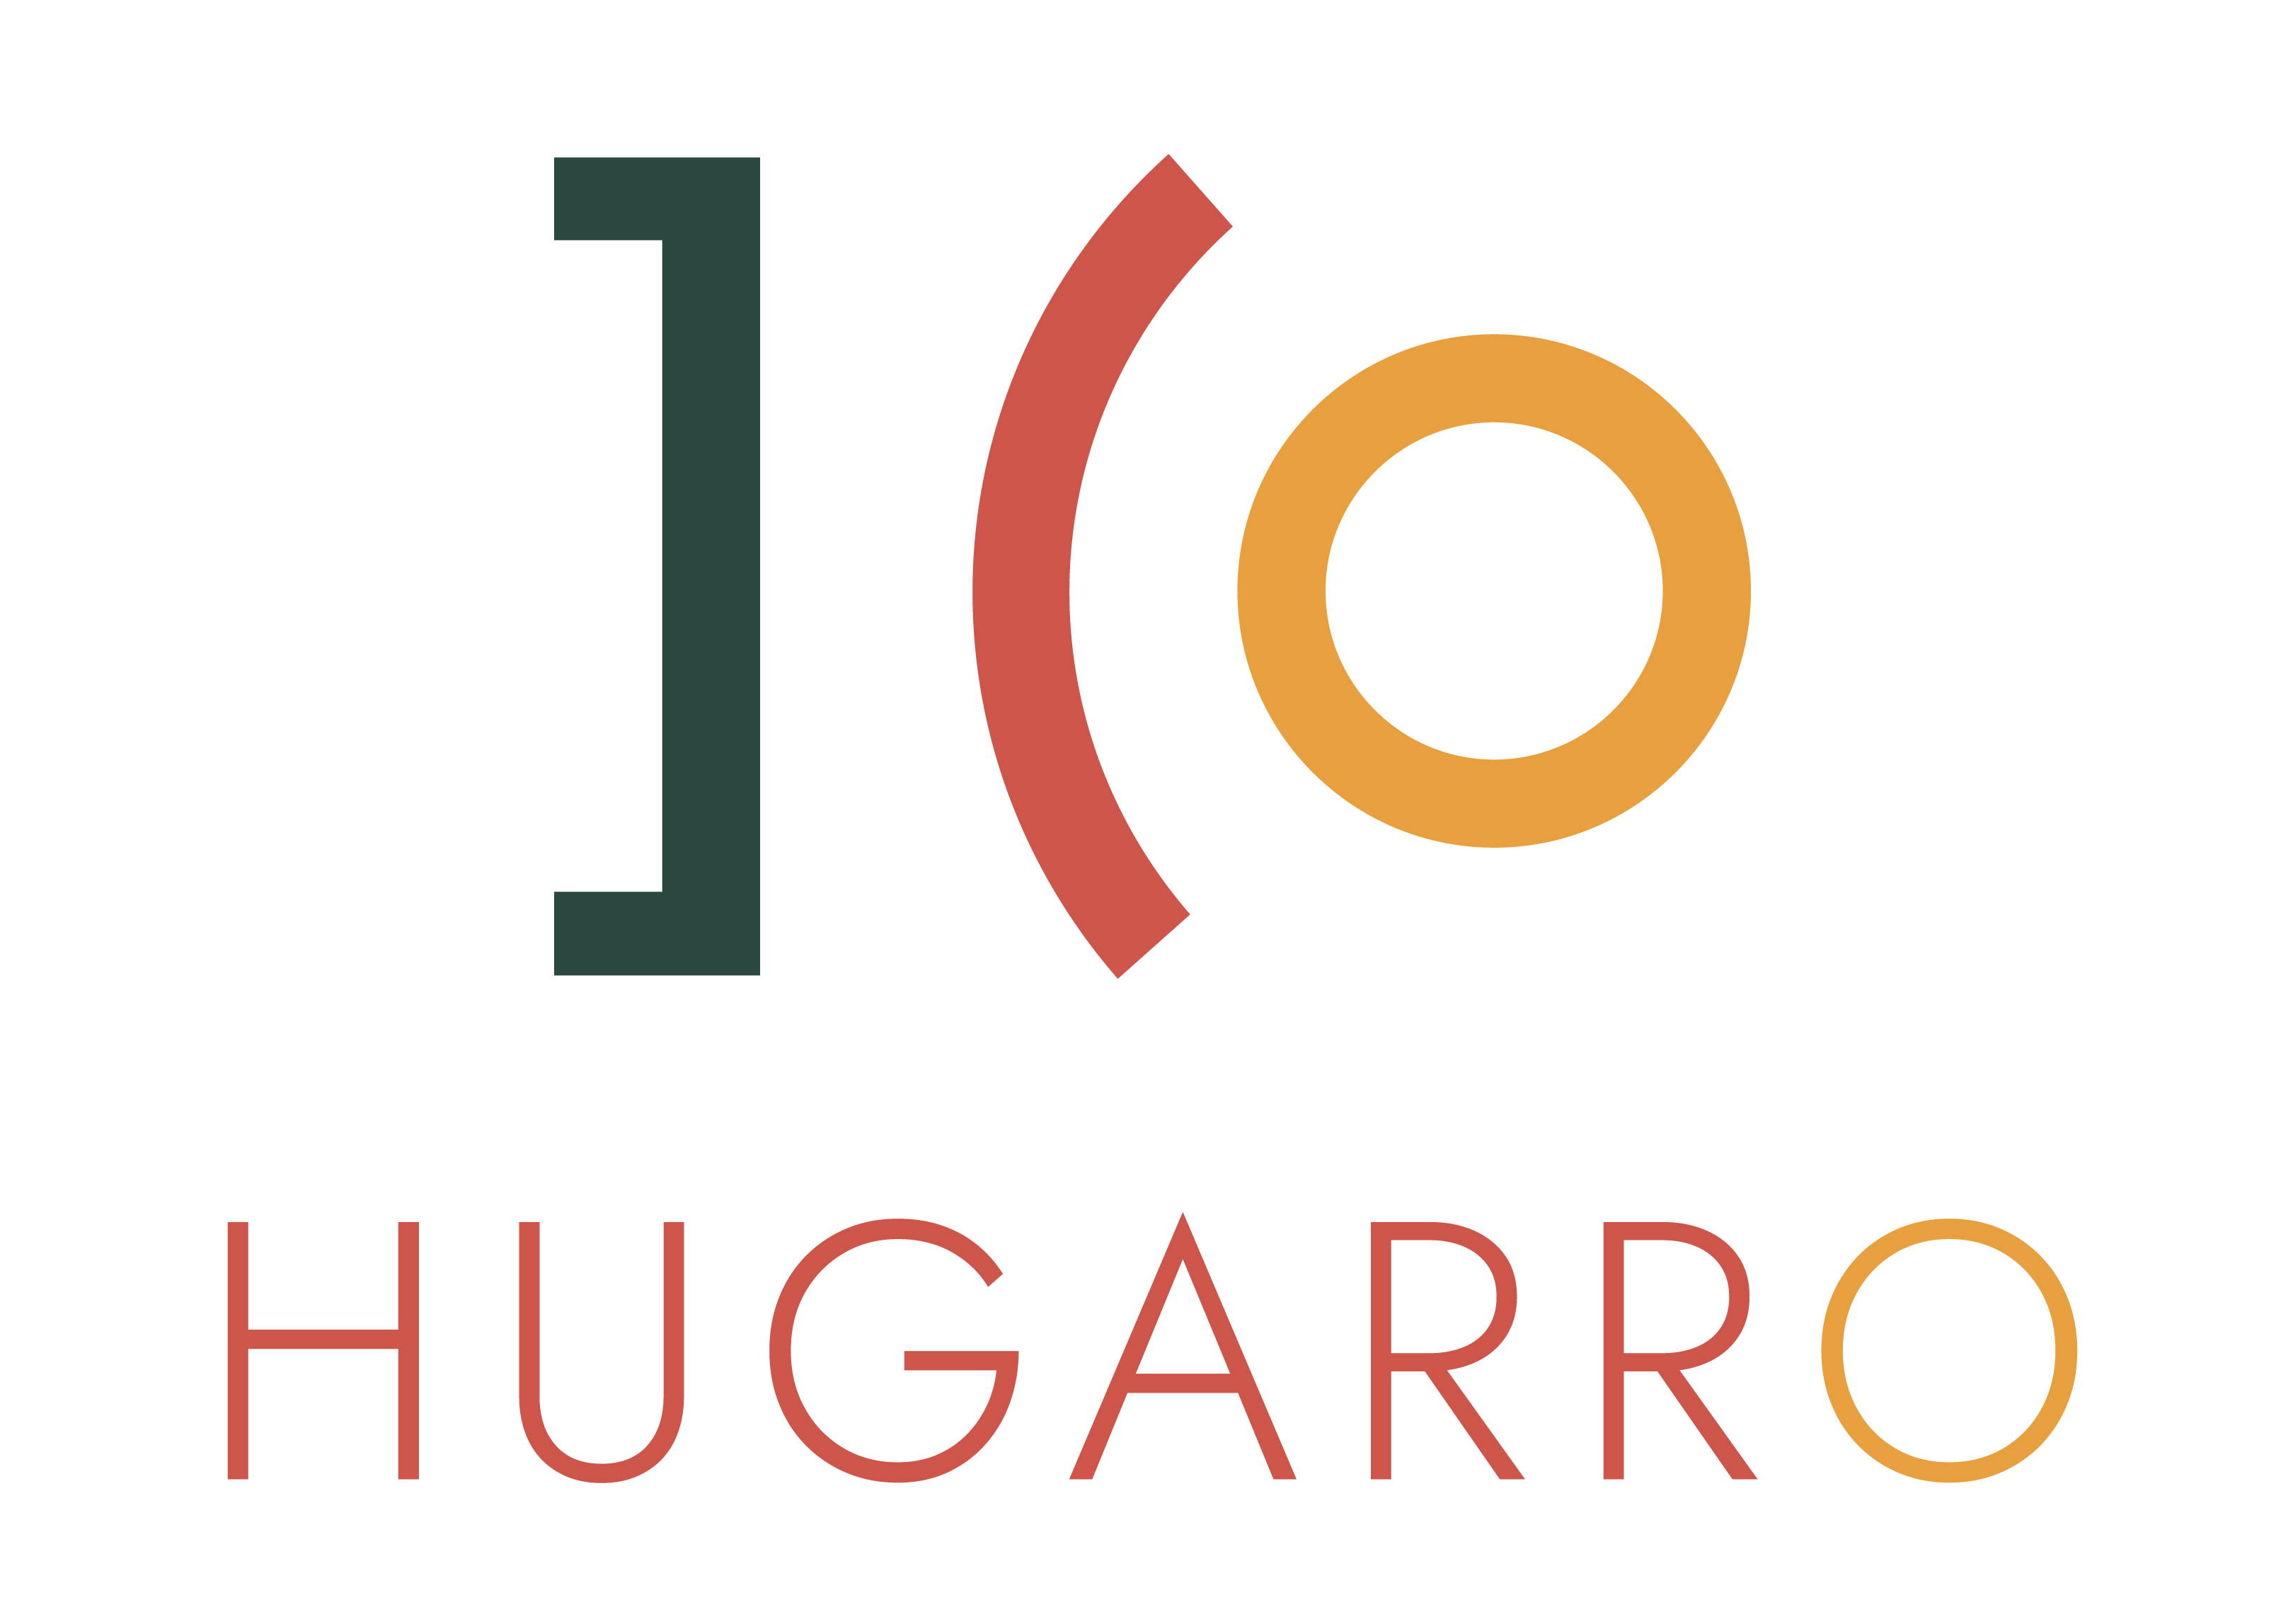 Hugarro prijzen,gebruiksvriendelijke website kosten,snelle website prijzen,prijsoverzicht website bouwen,transparante website tarieven